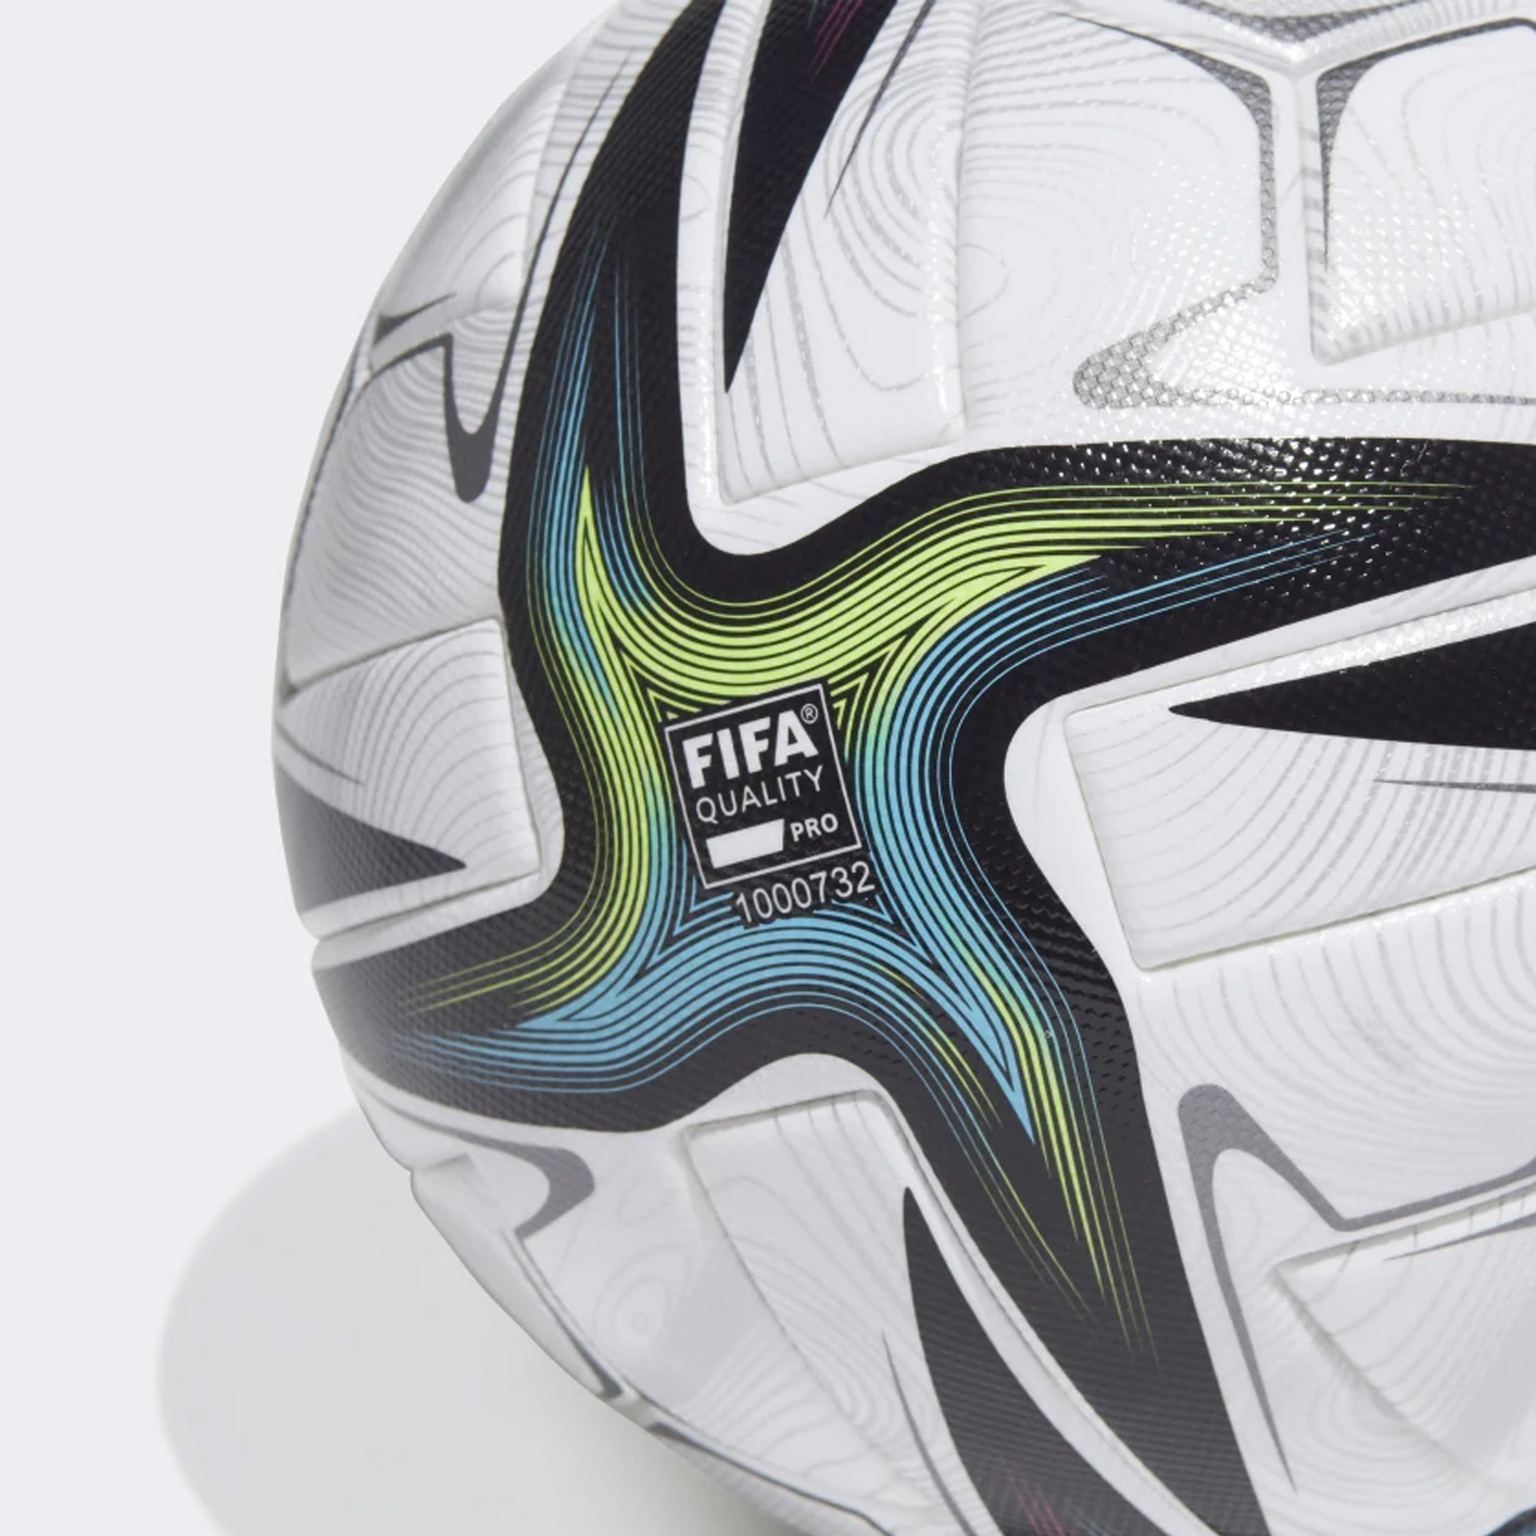 Футбольный мяч Adidas Conext21 Pro GK3488